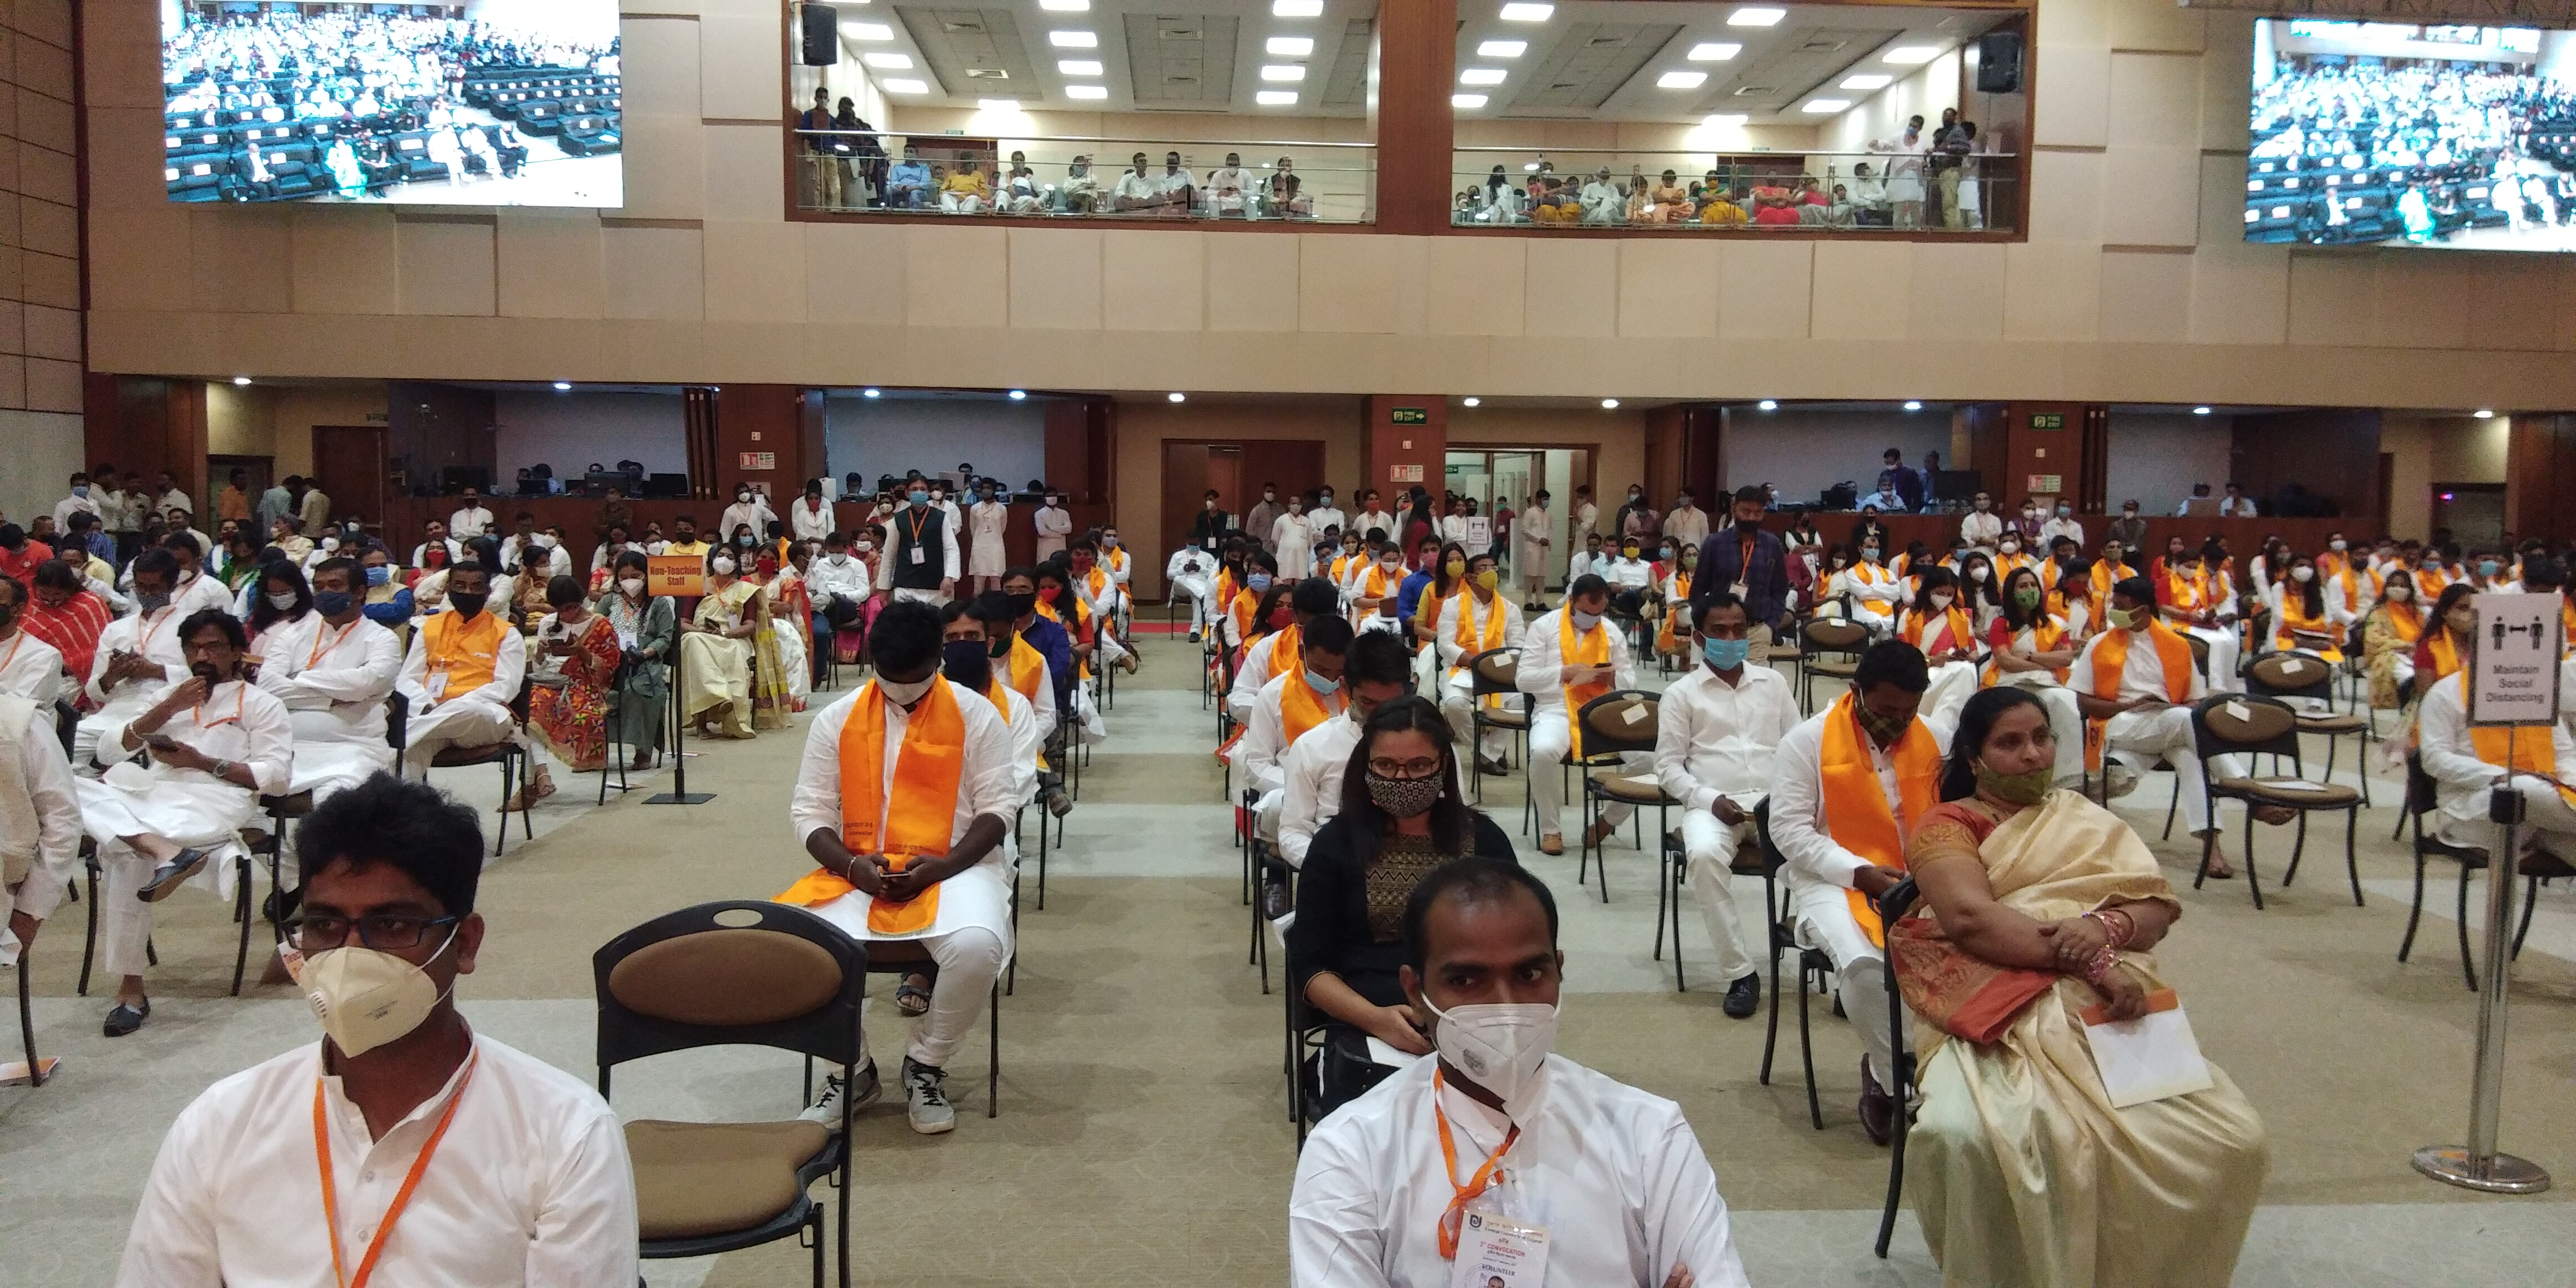 ગુજરાત કેન્દ્રીય વિશ્વવિદ્યાલયનો ત્રીજો પદવીદાન સમારોહ યોજાયો